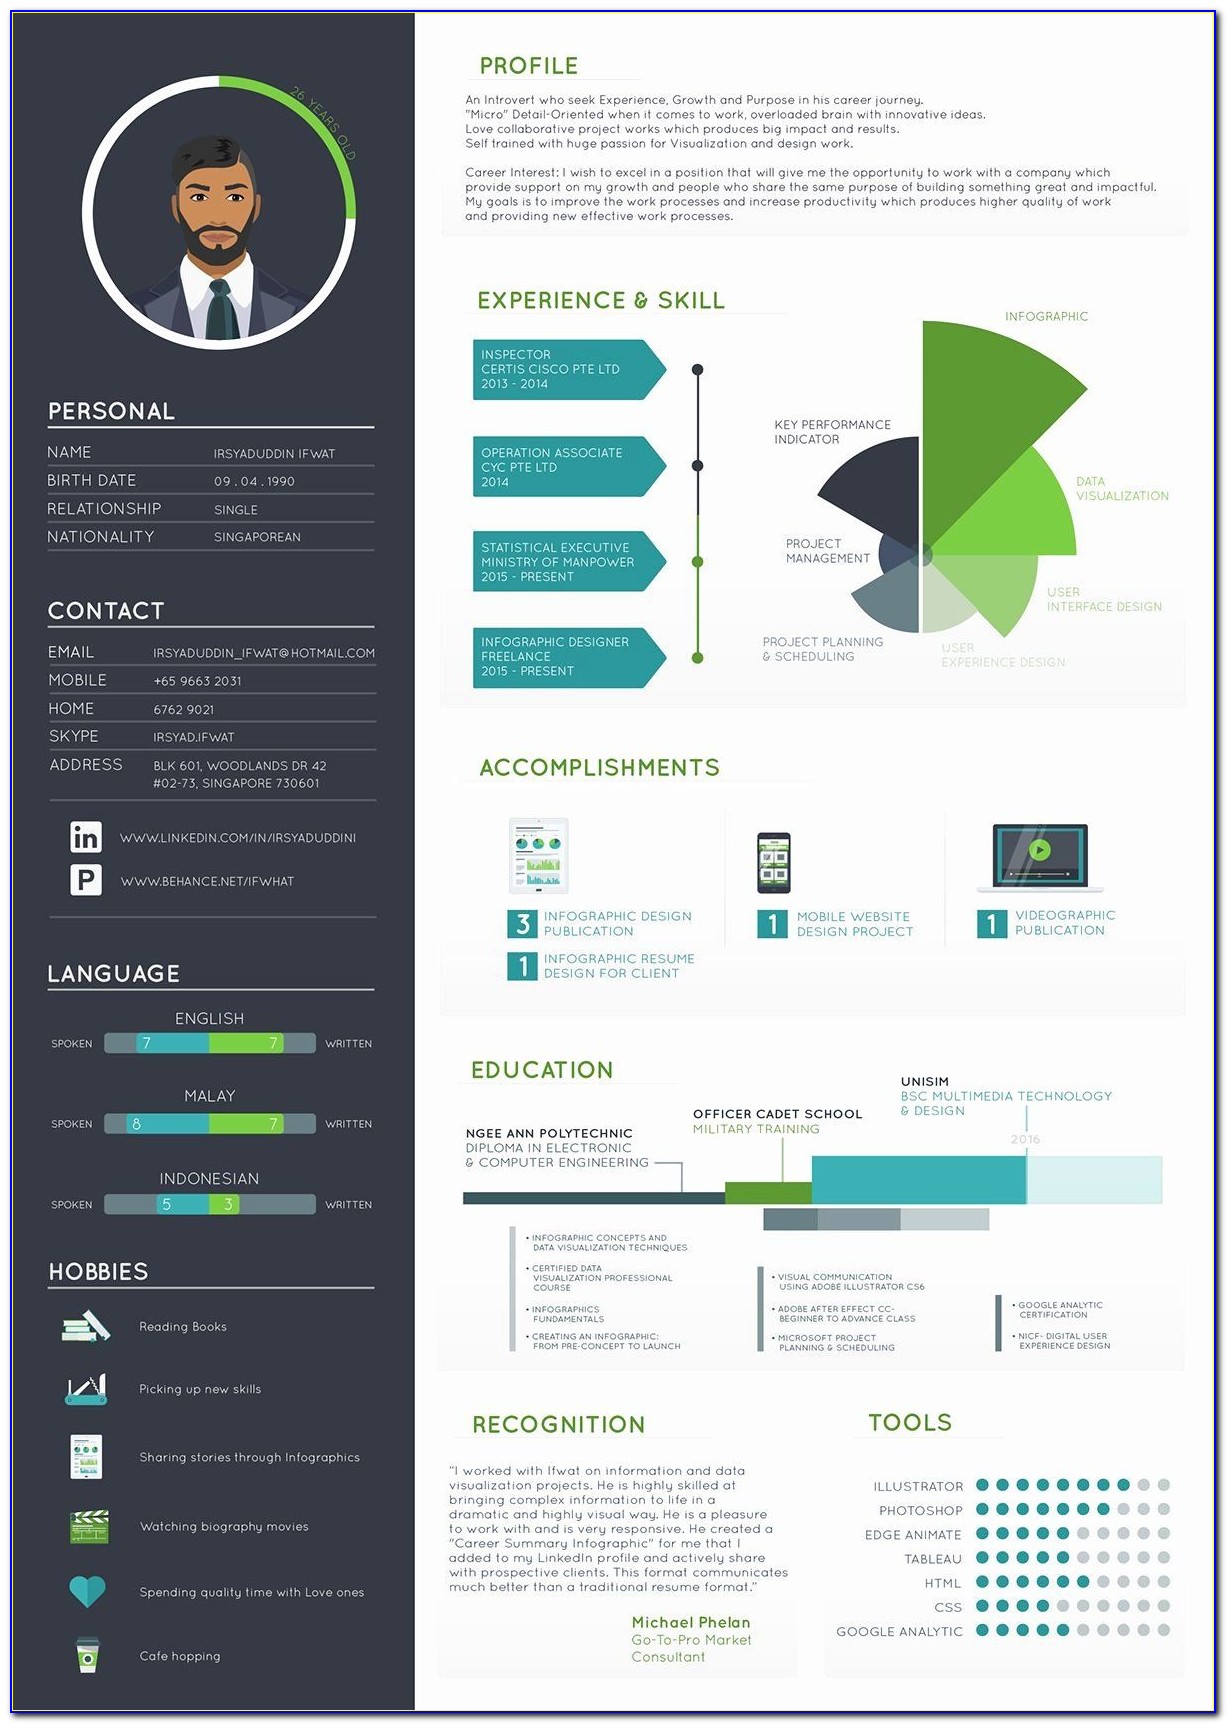 Accenture Infographic Resume Builder